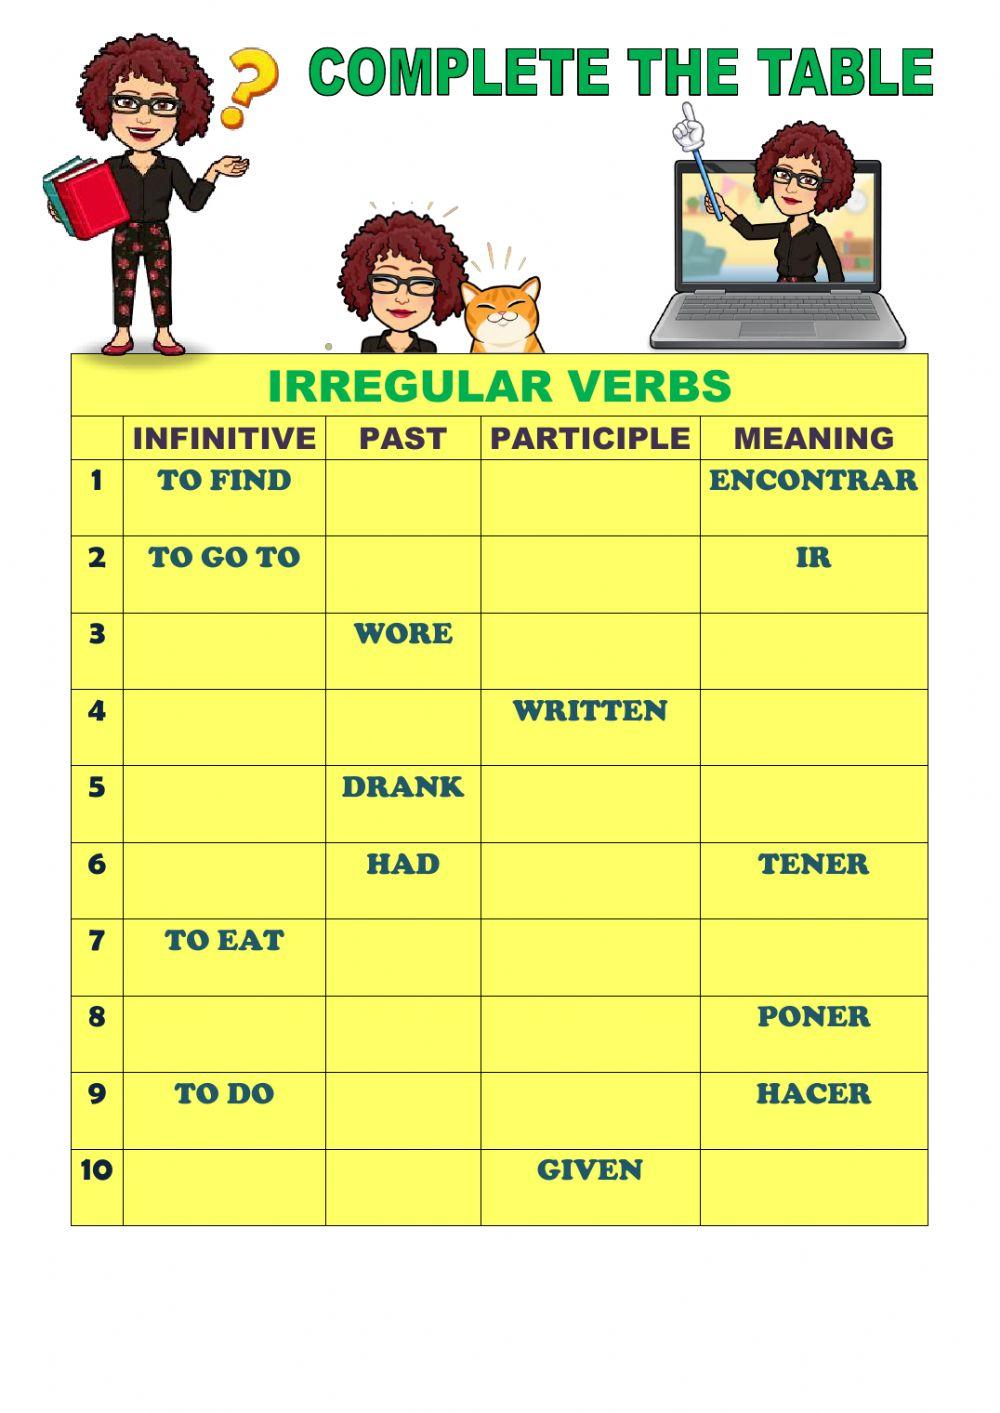 Ten irregular verbs